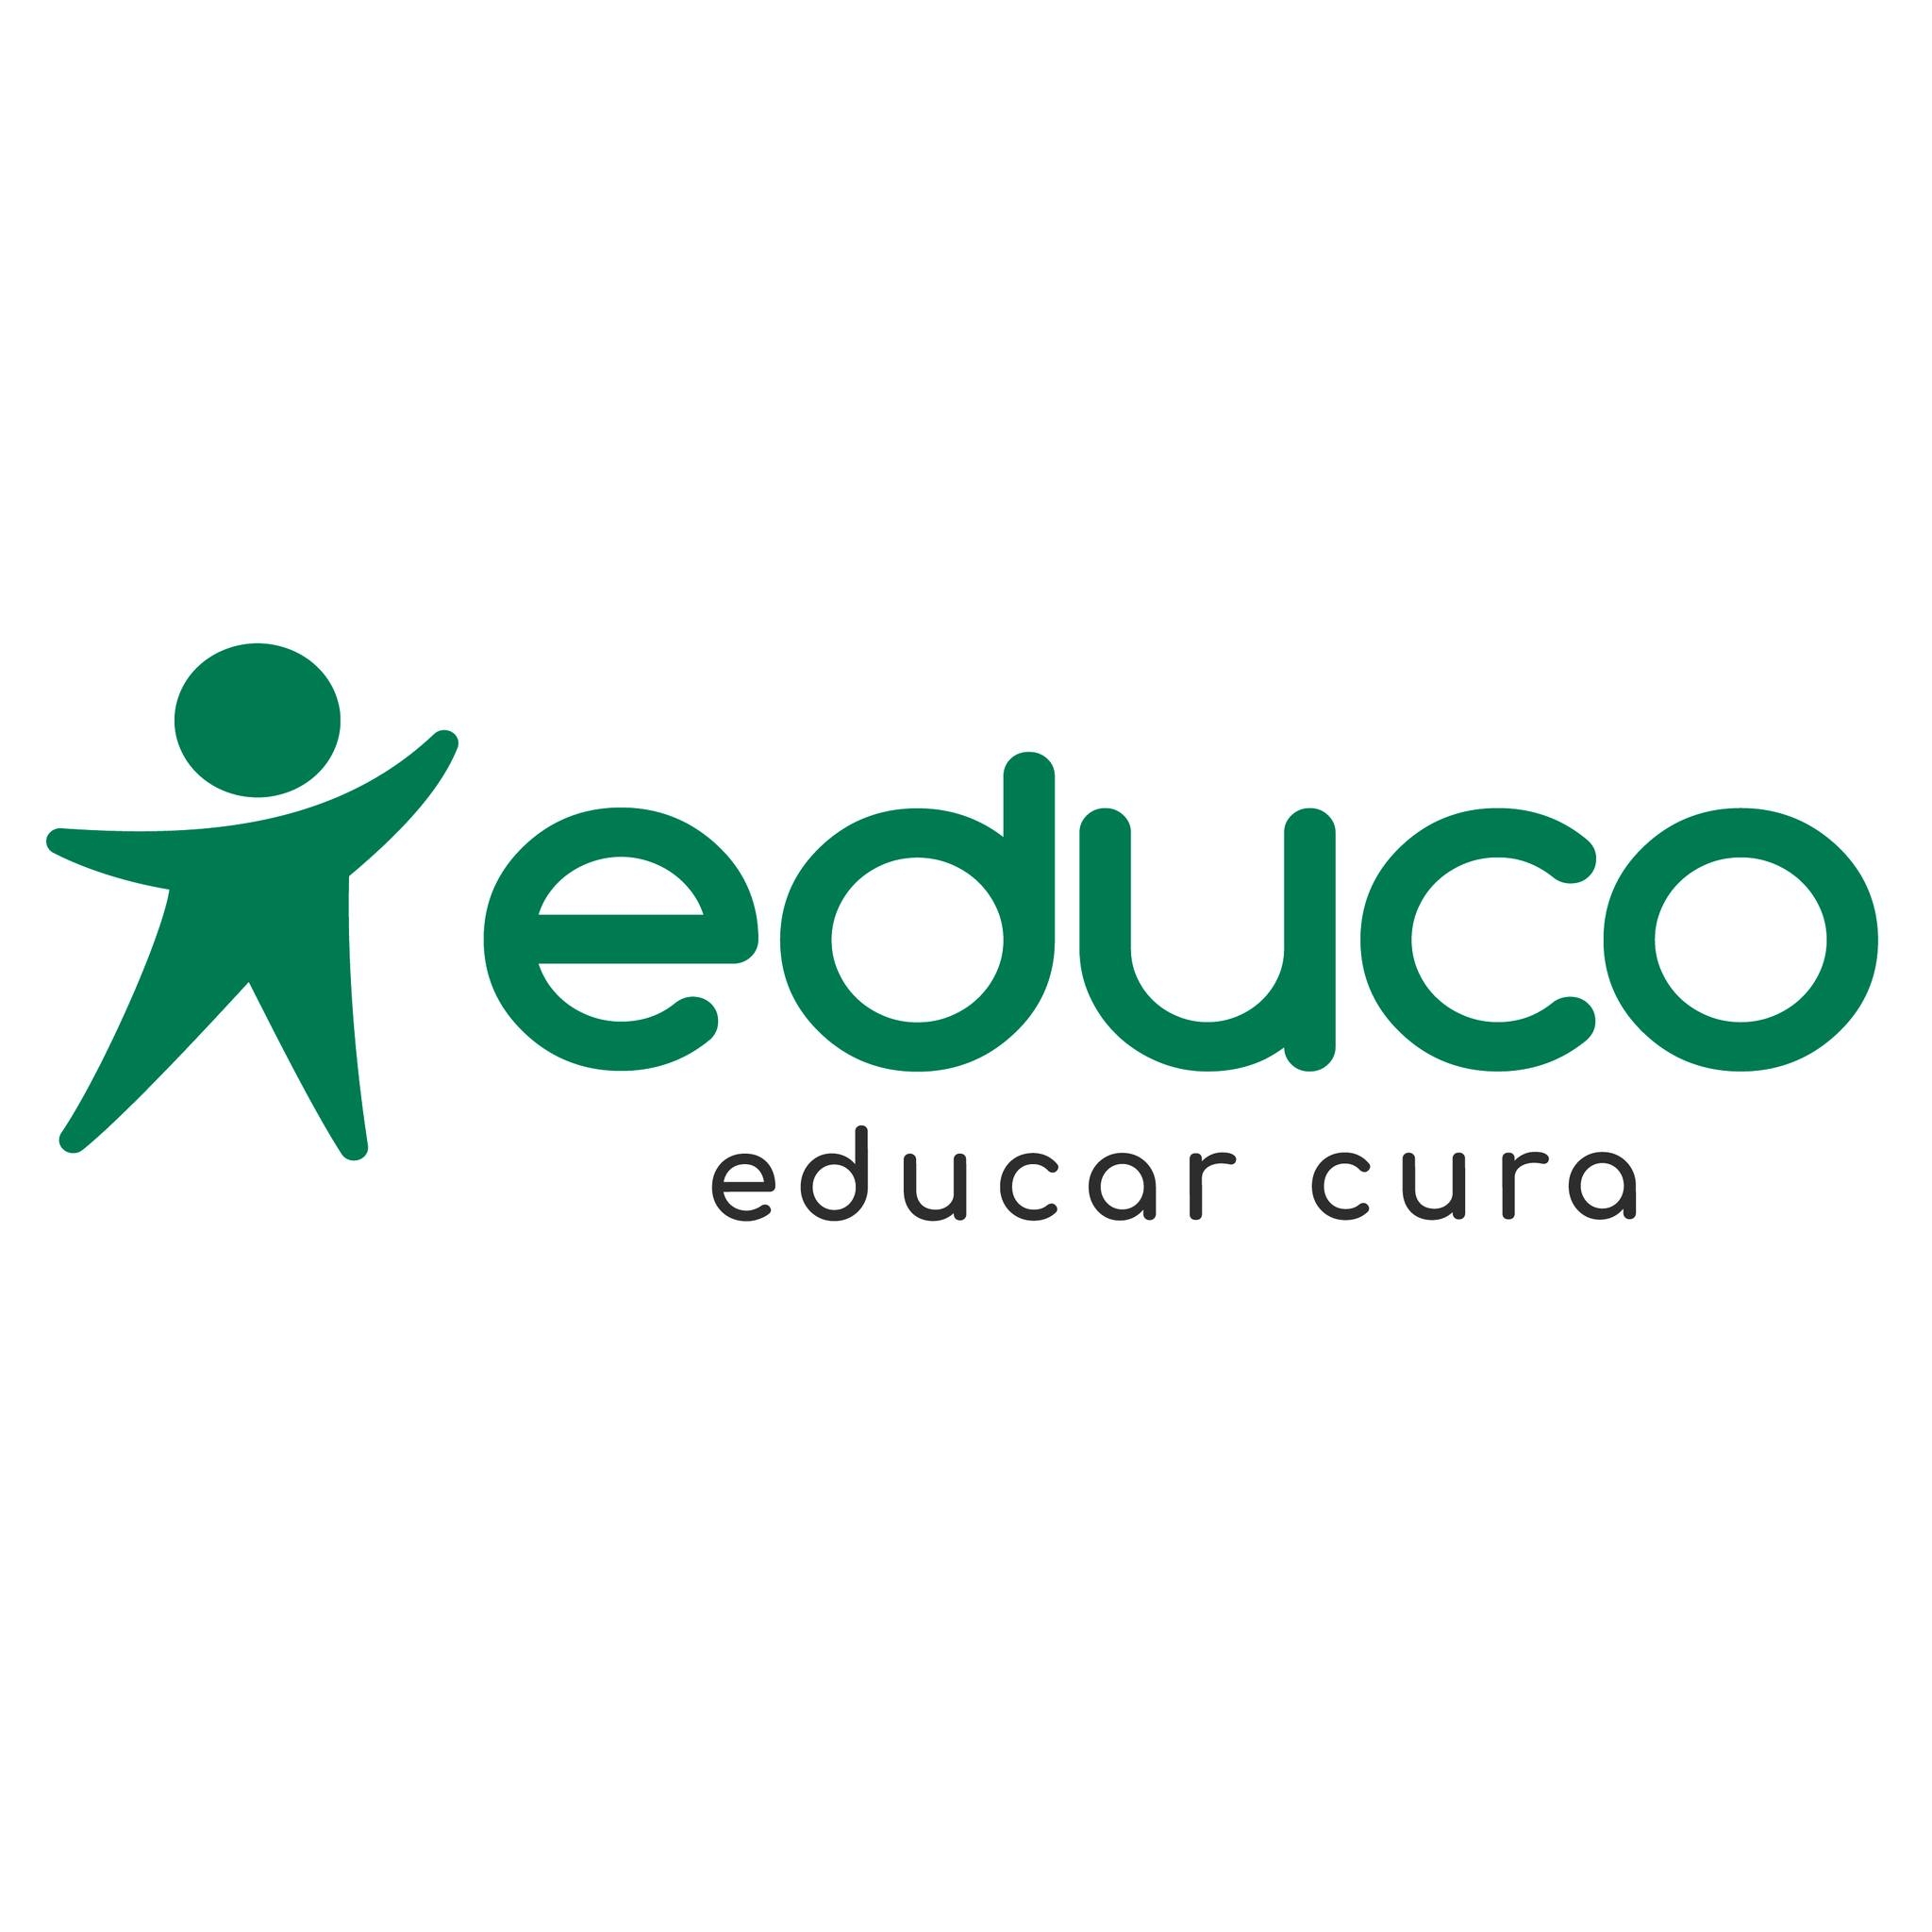 Educo EducarCura Logo